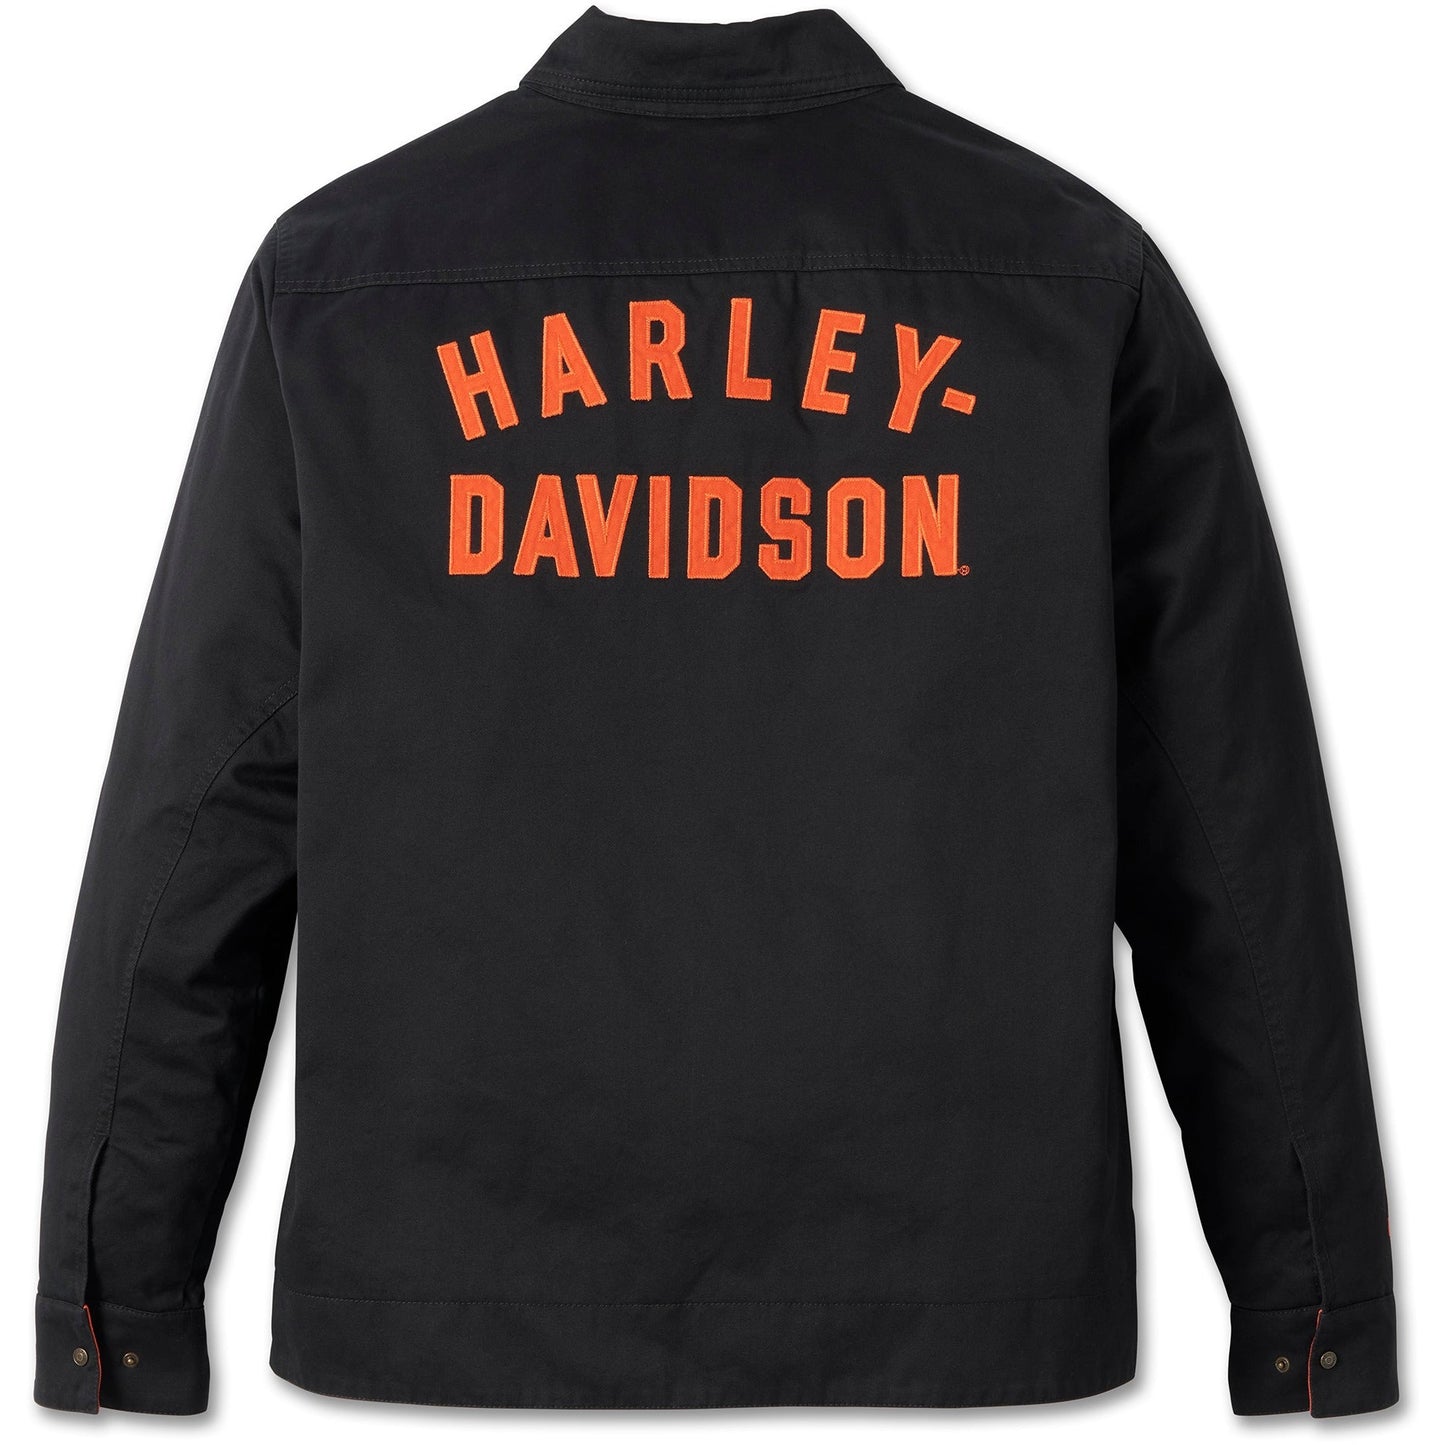 Harley Davidson® Men's Harley Work Jacket